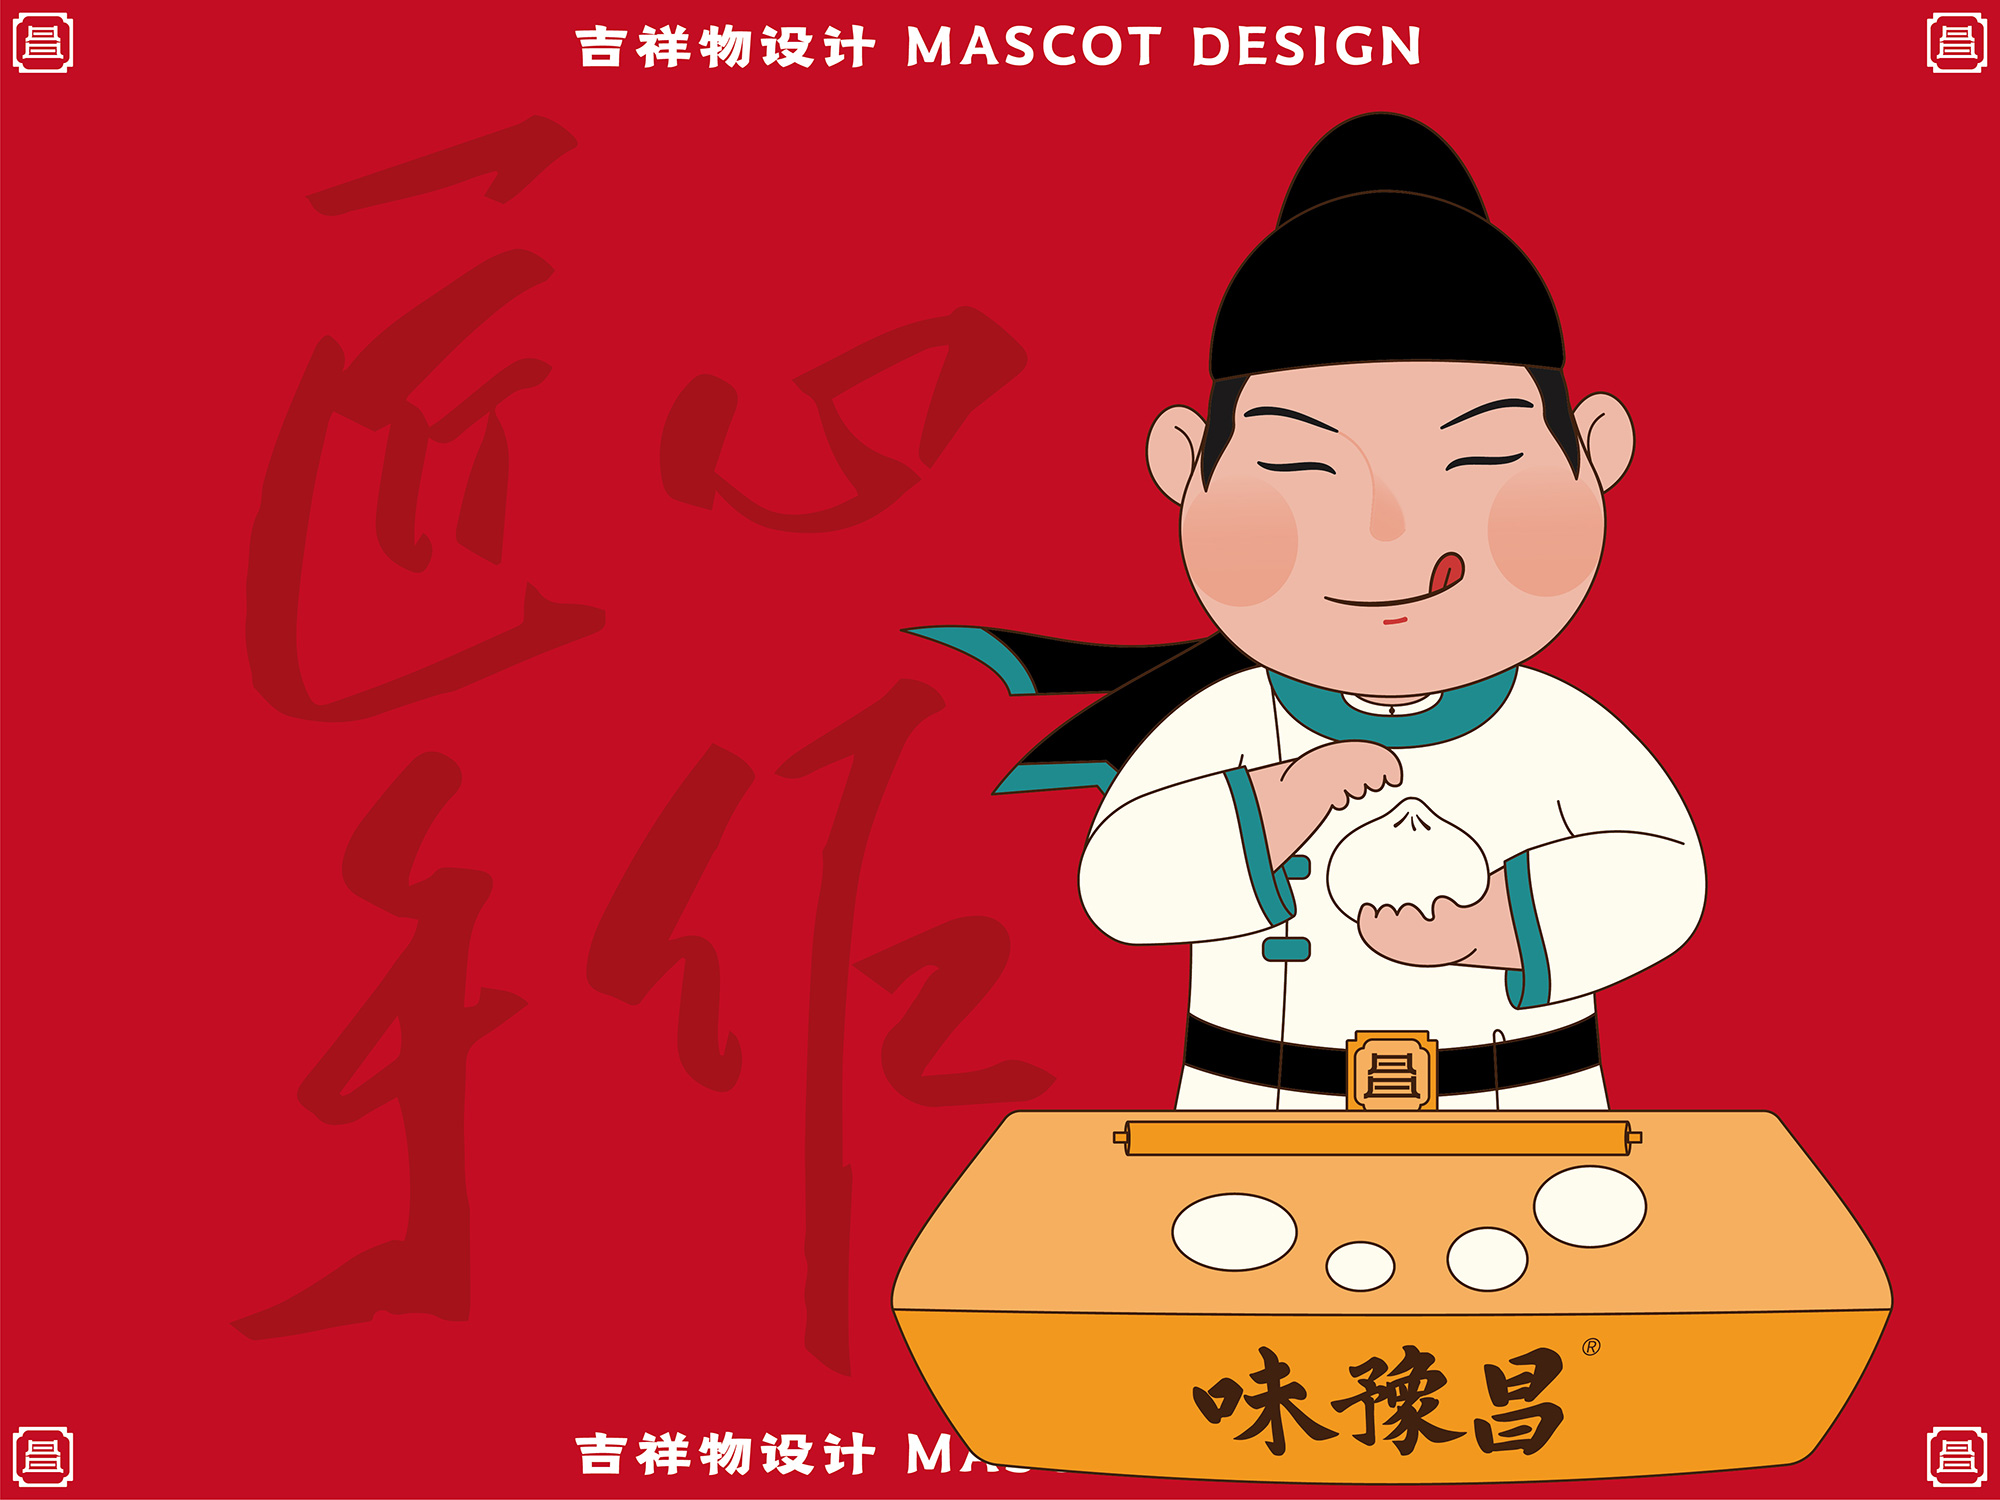 味豫昌吉祥物IP设计、南昌餐饮标志VI设计、包参谋品牌全案设计